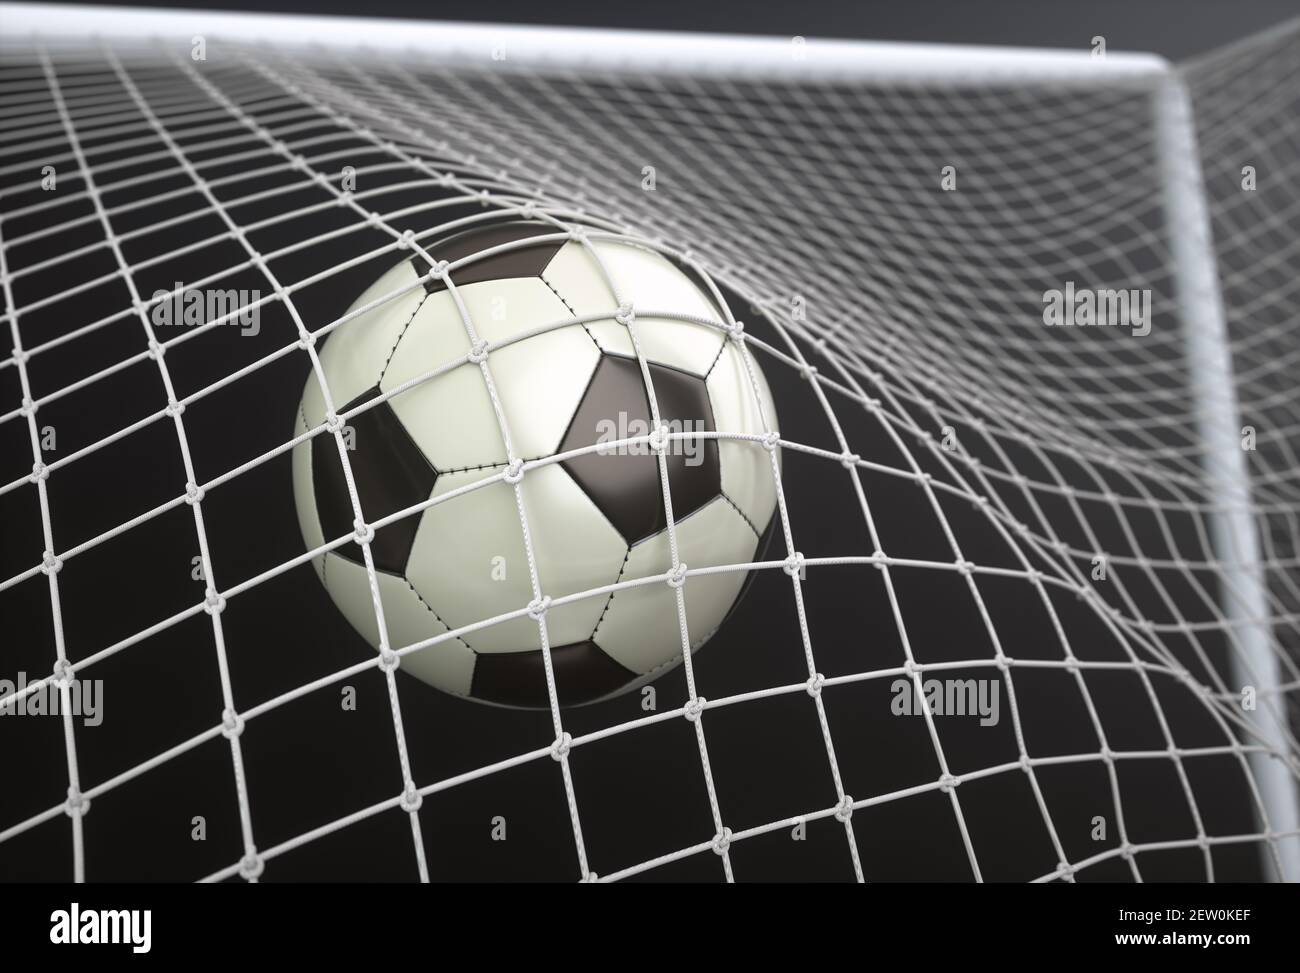 Ballon de football, marquant le but et déplaçant le filet. Illustration 3D, sur fond sombre. Banque D'Images